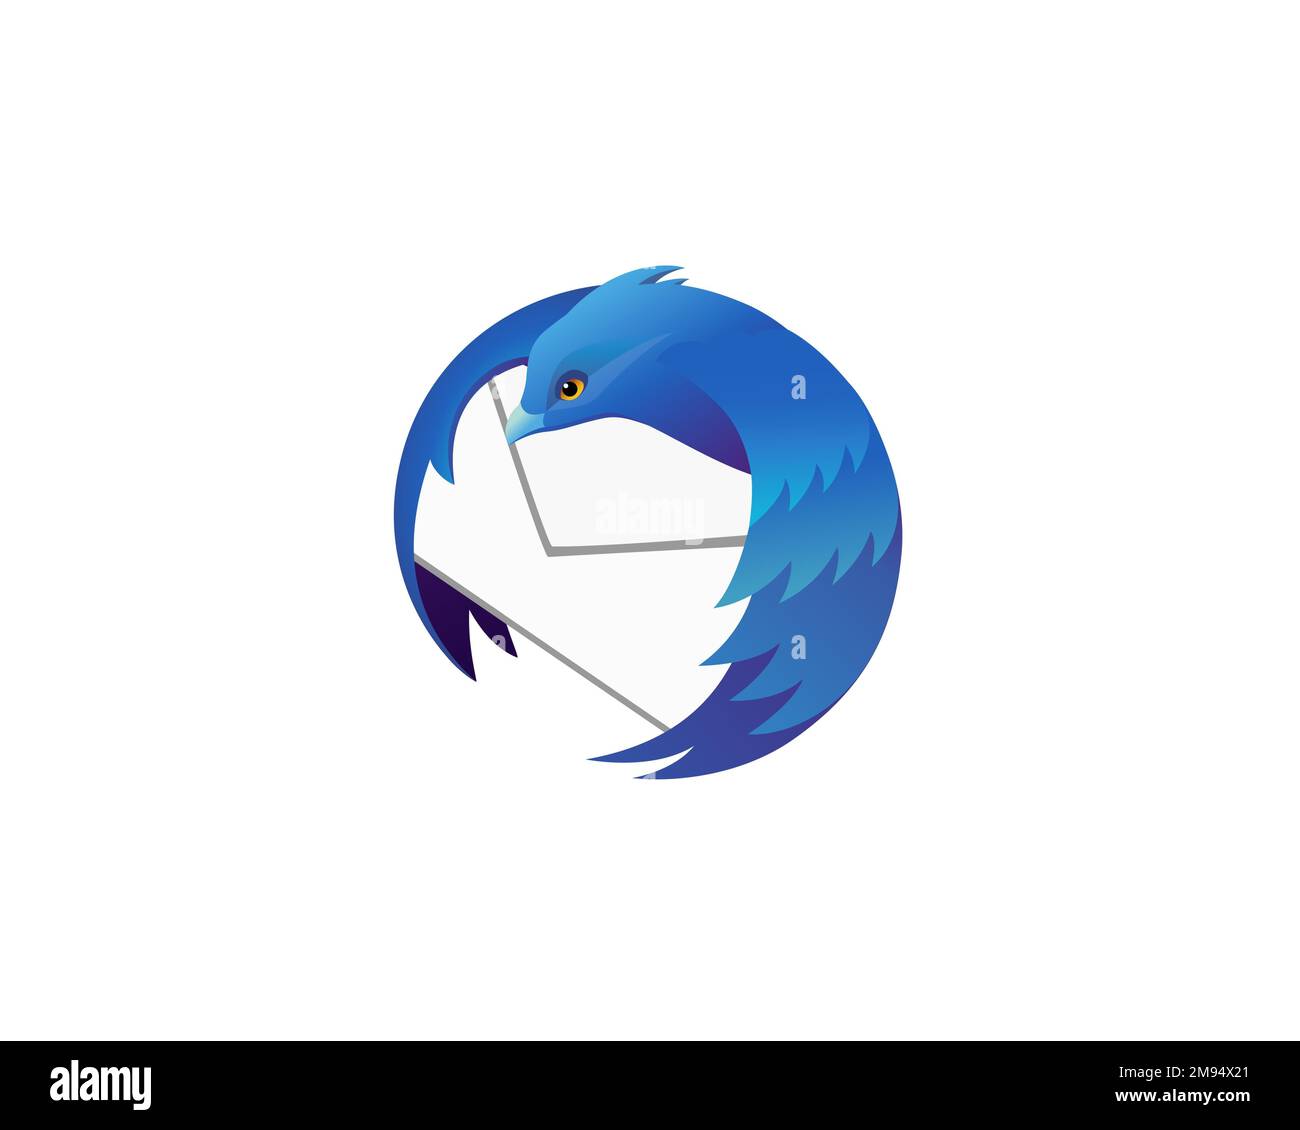 Discover more than 129 thunderbird logo